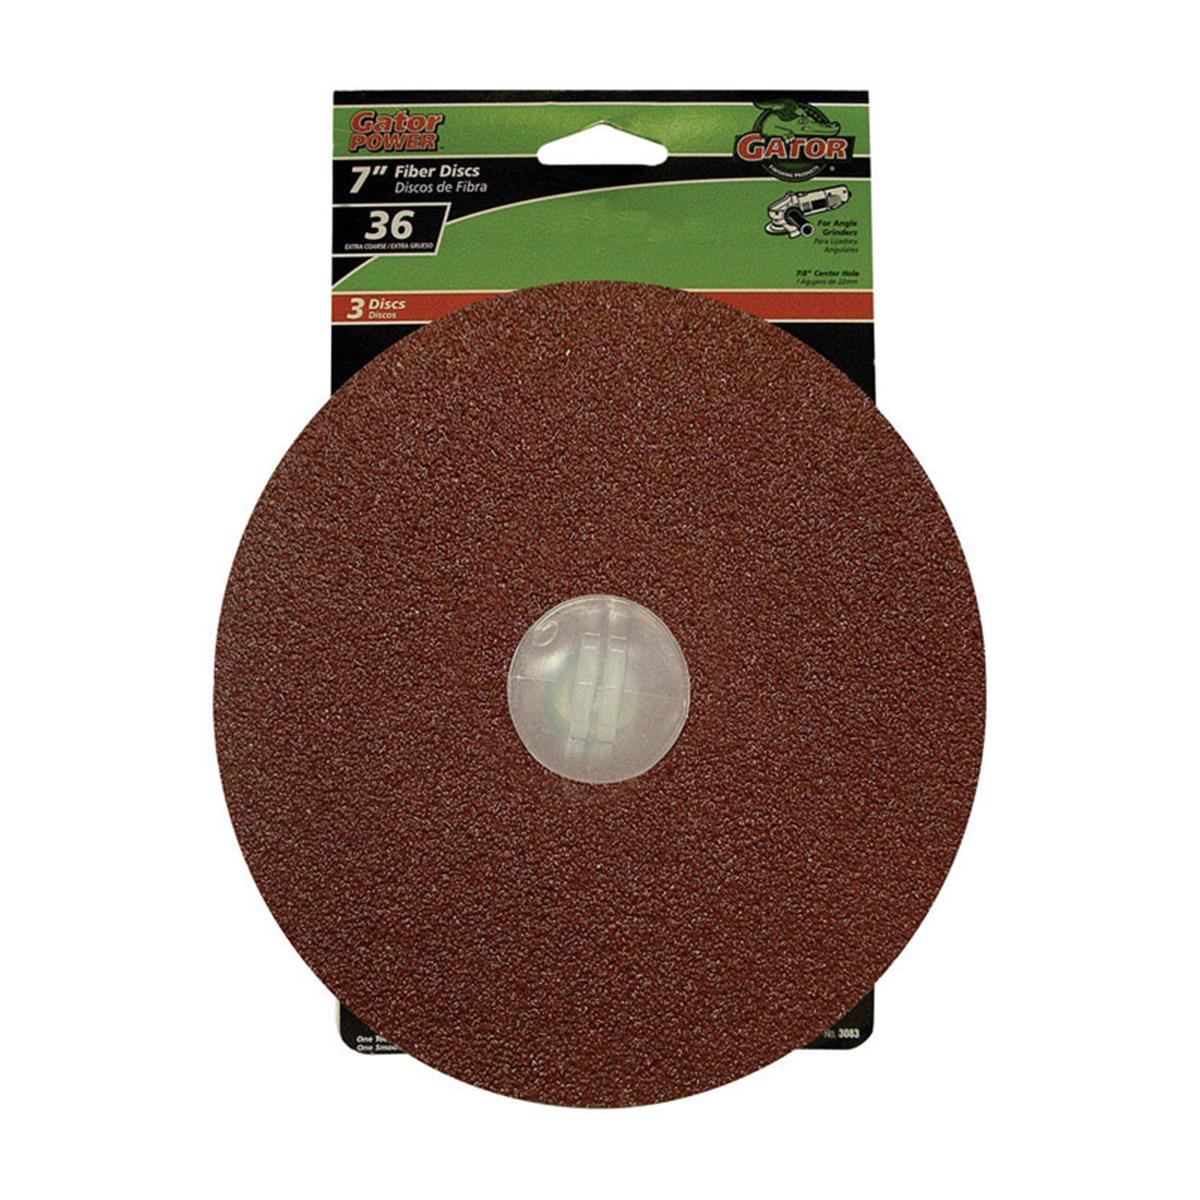 2004786 7 In. Fiber Sanding Disc, 36 Grit - Pack Of 3